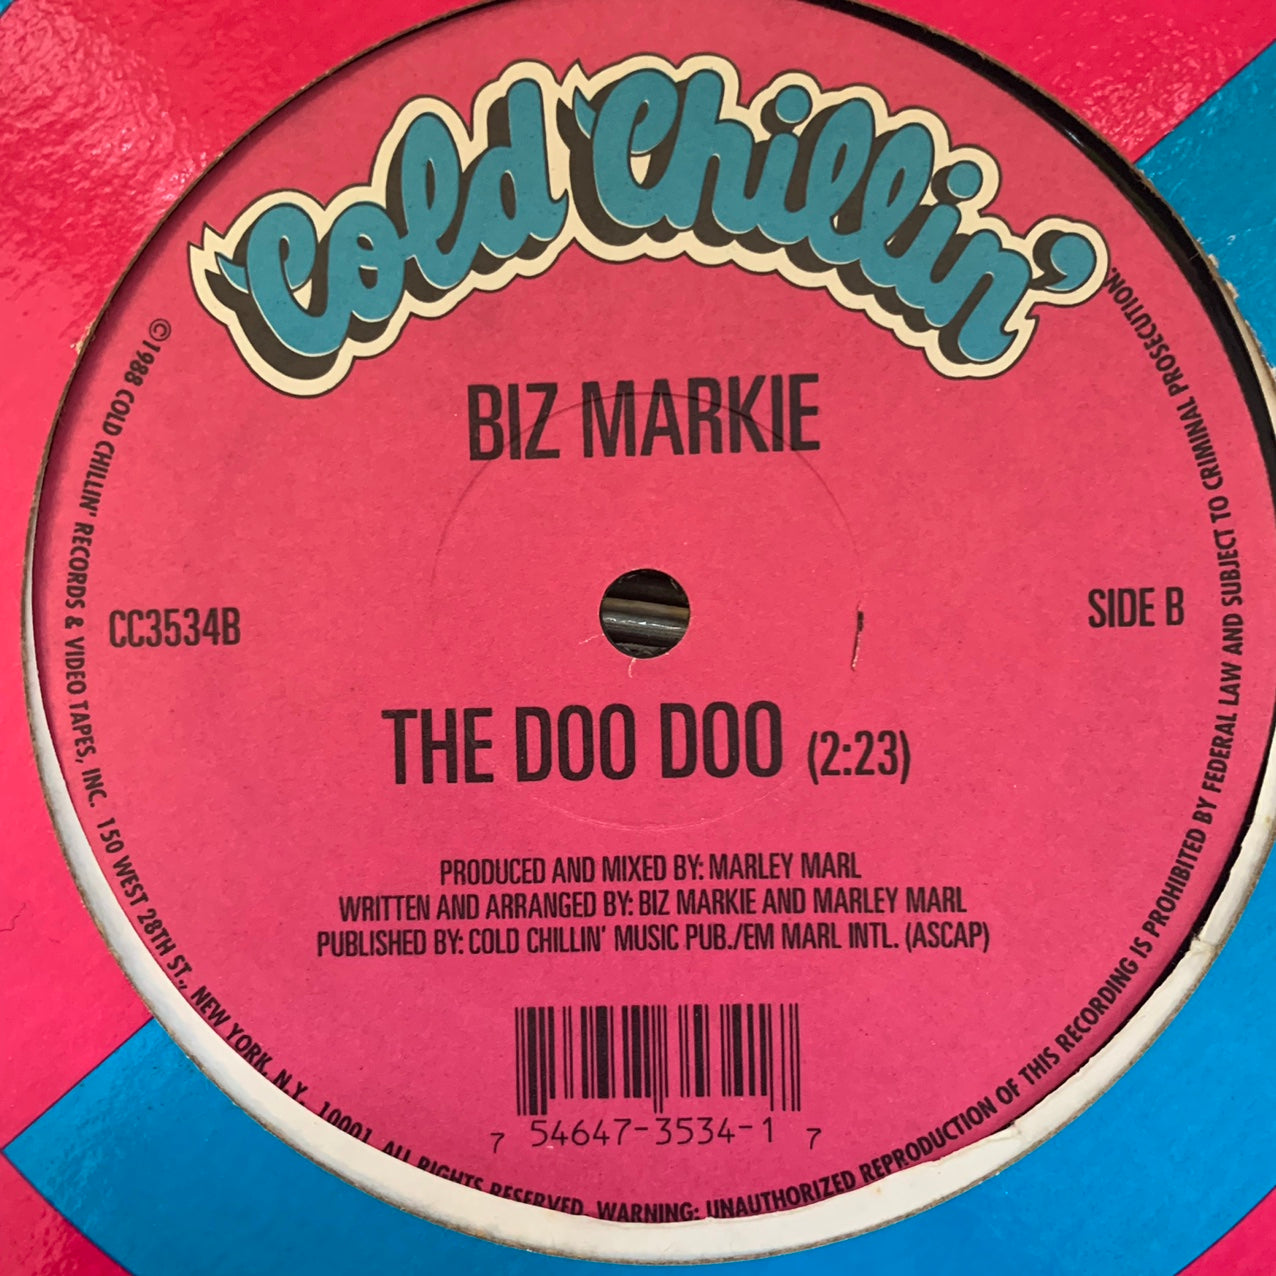 Biz Markie “Pickin’ Boogers” / “The Doo Doo” 2 Track 12inch Vinyl